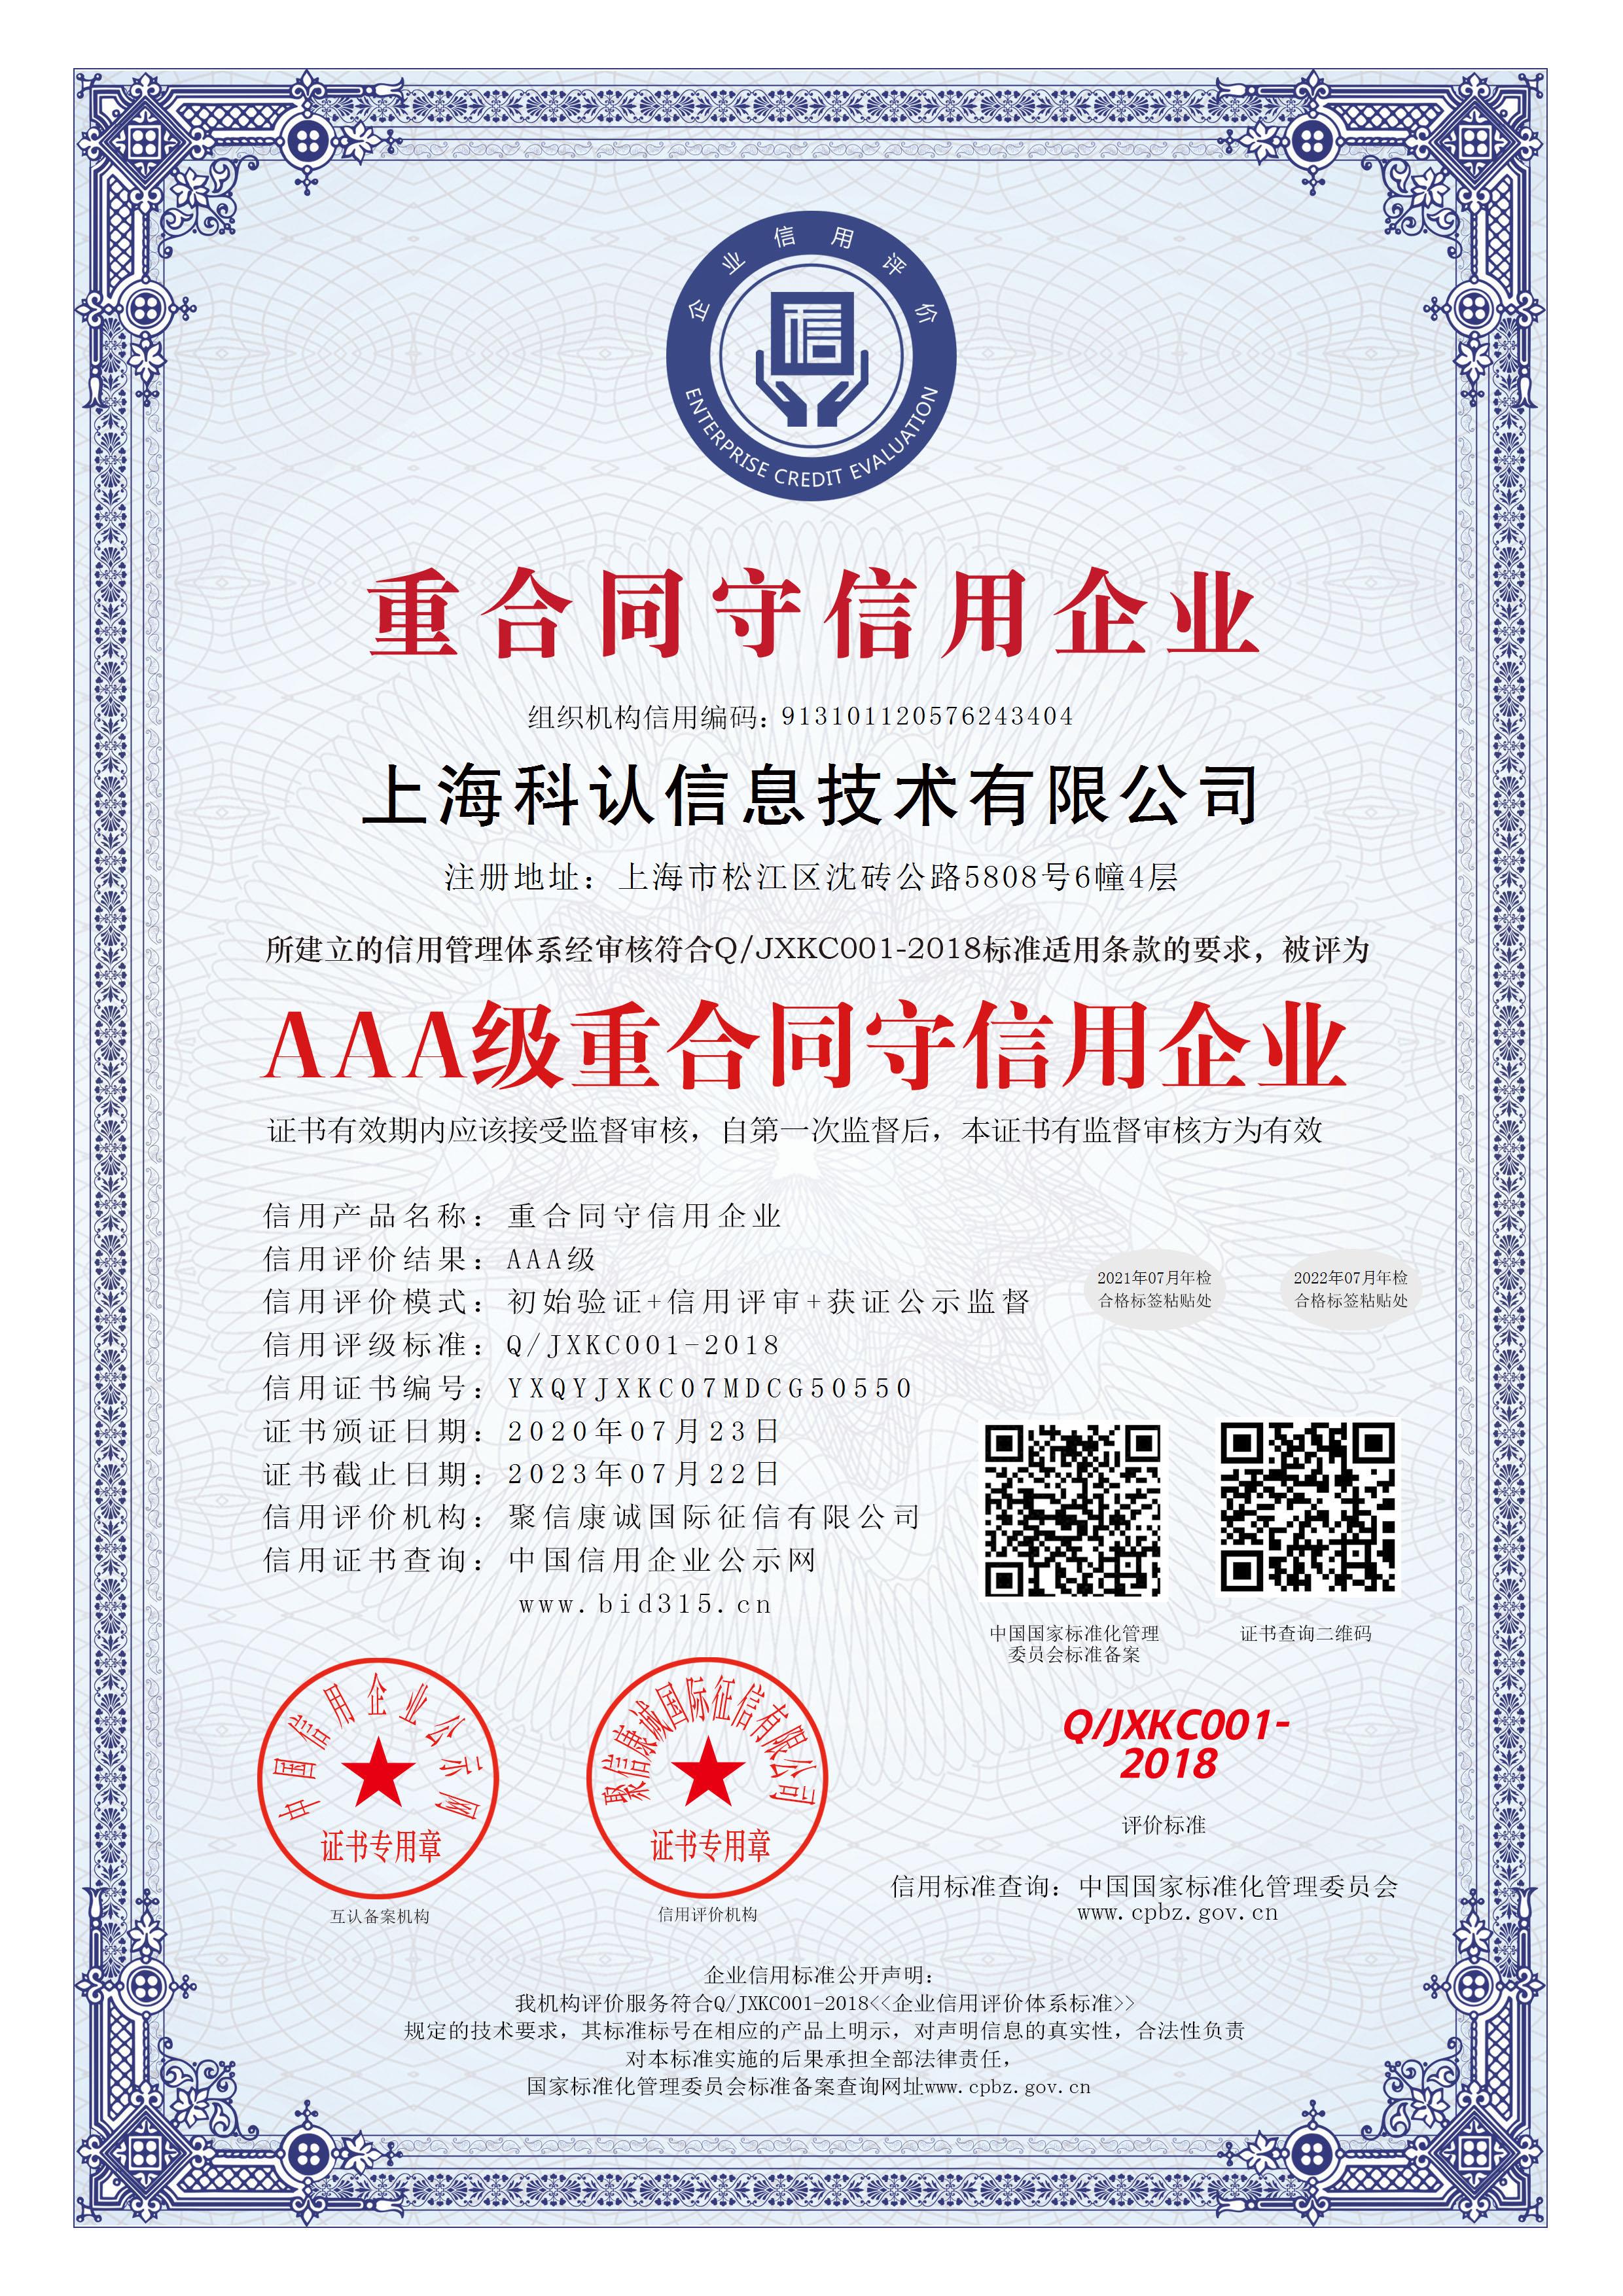 上海科认信息技术有限公司_AAA级重合同守信用企业_中文版_电子版